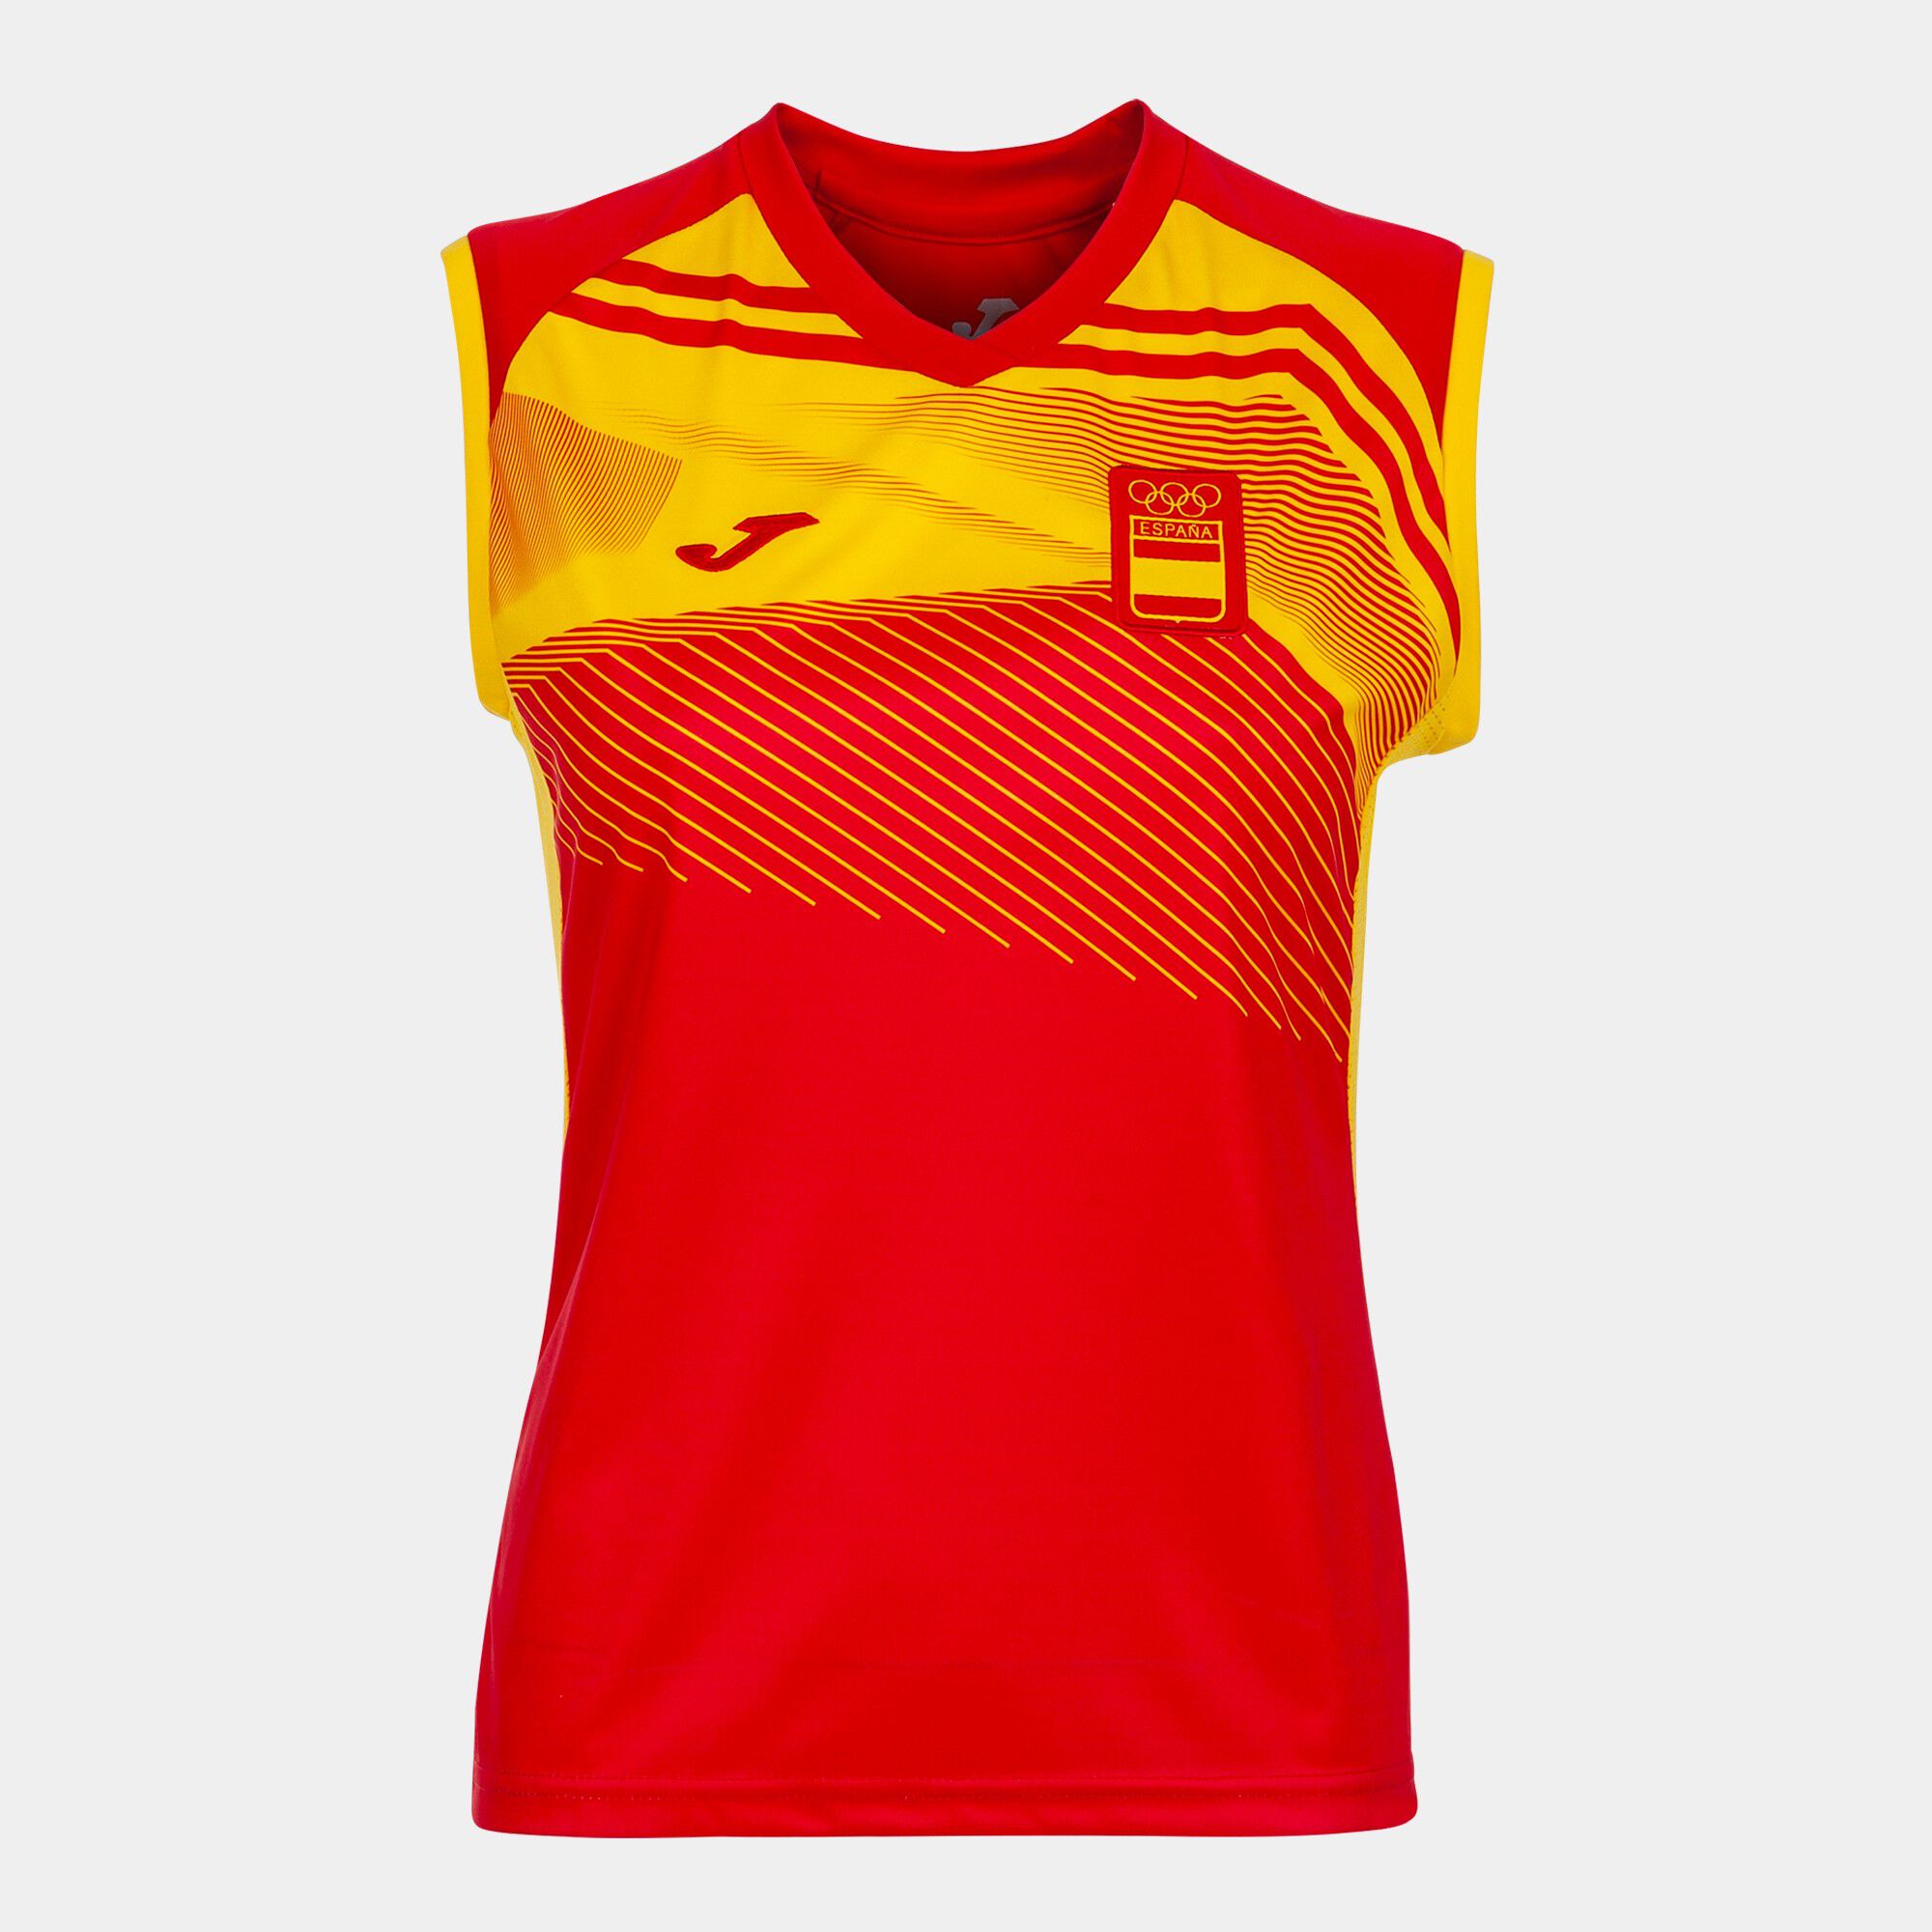 Camiseta sin mangas Comité Olímpico Español mujer